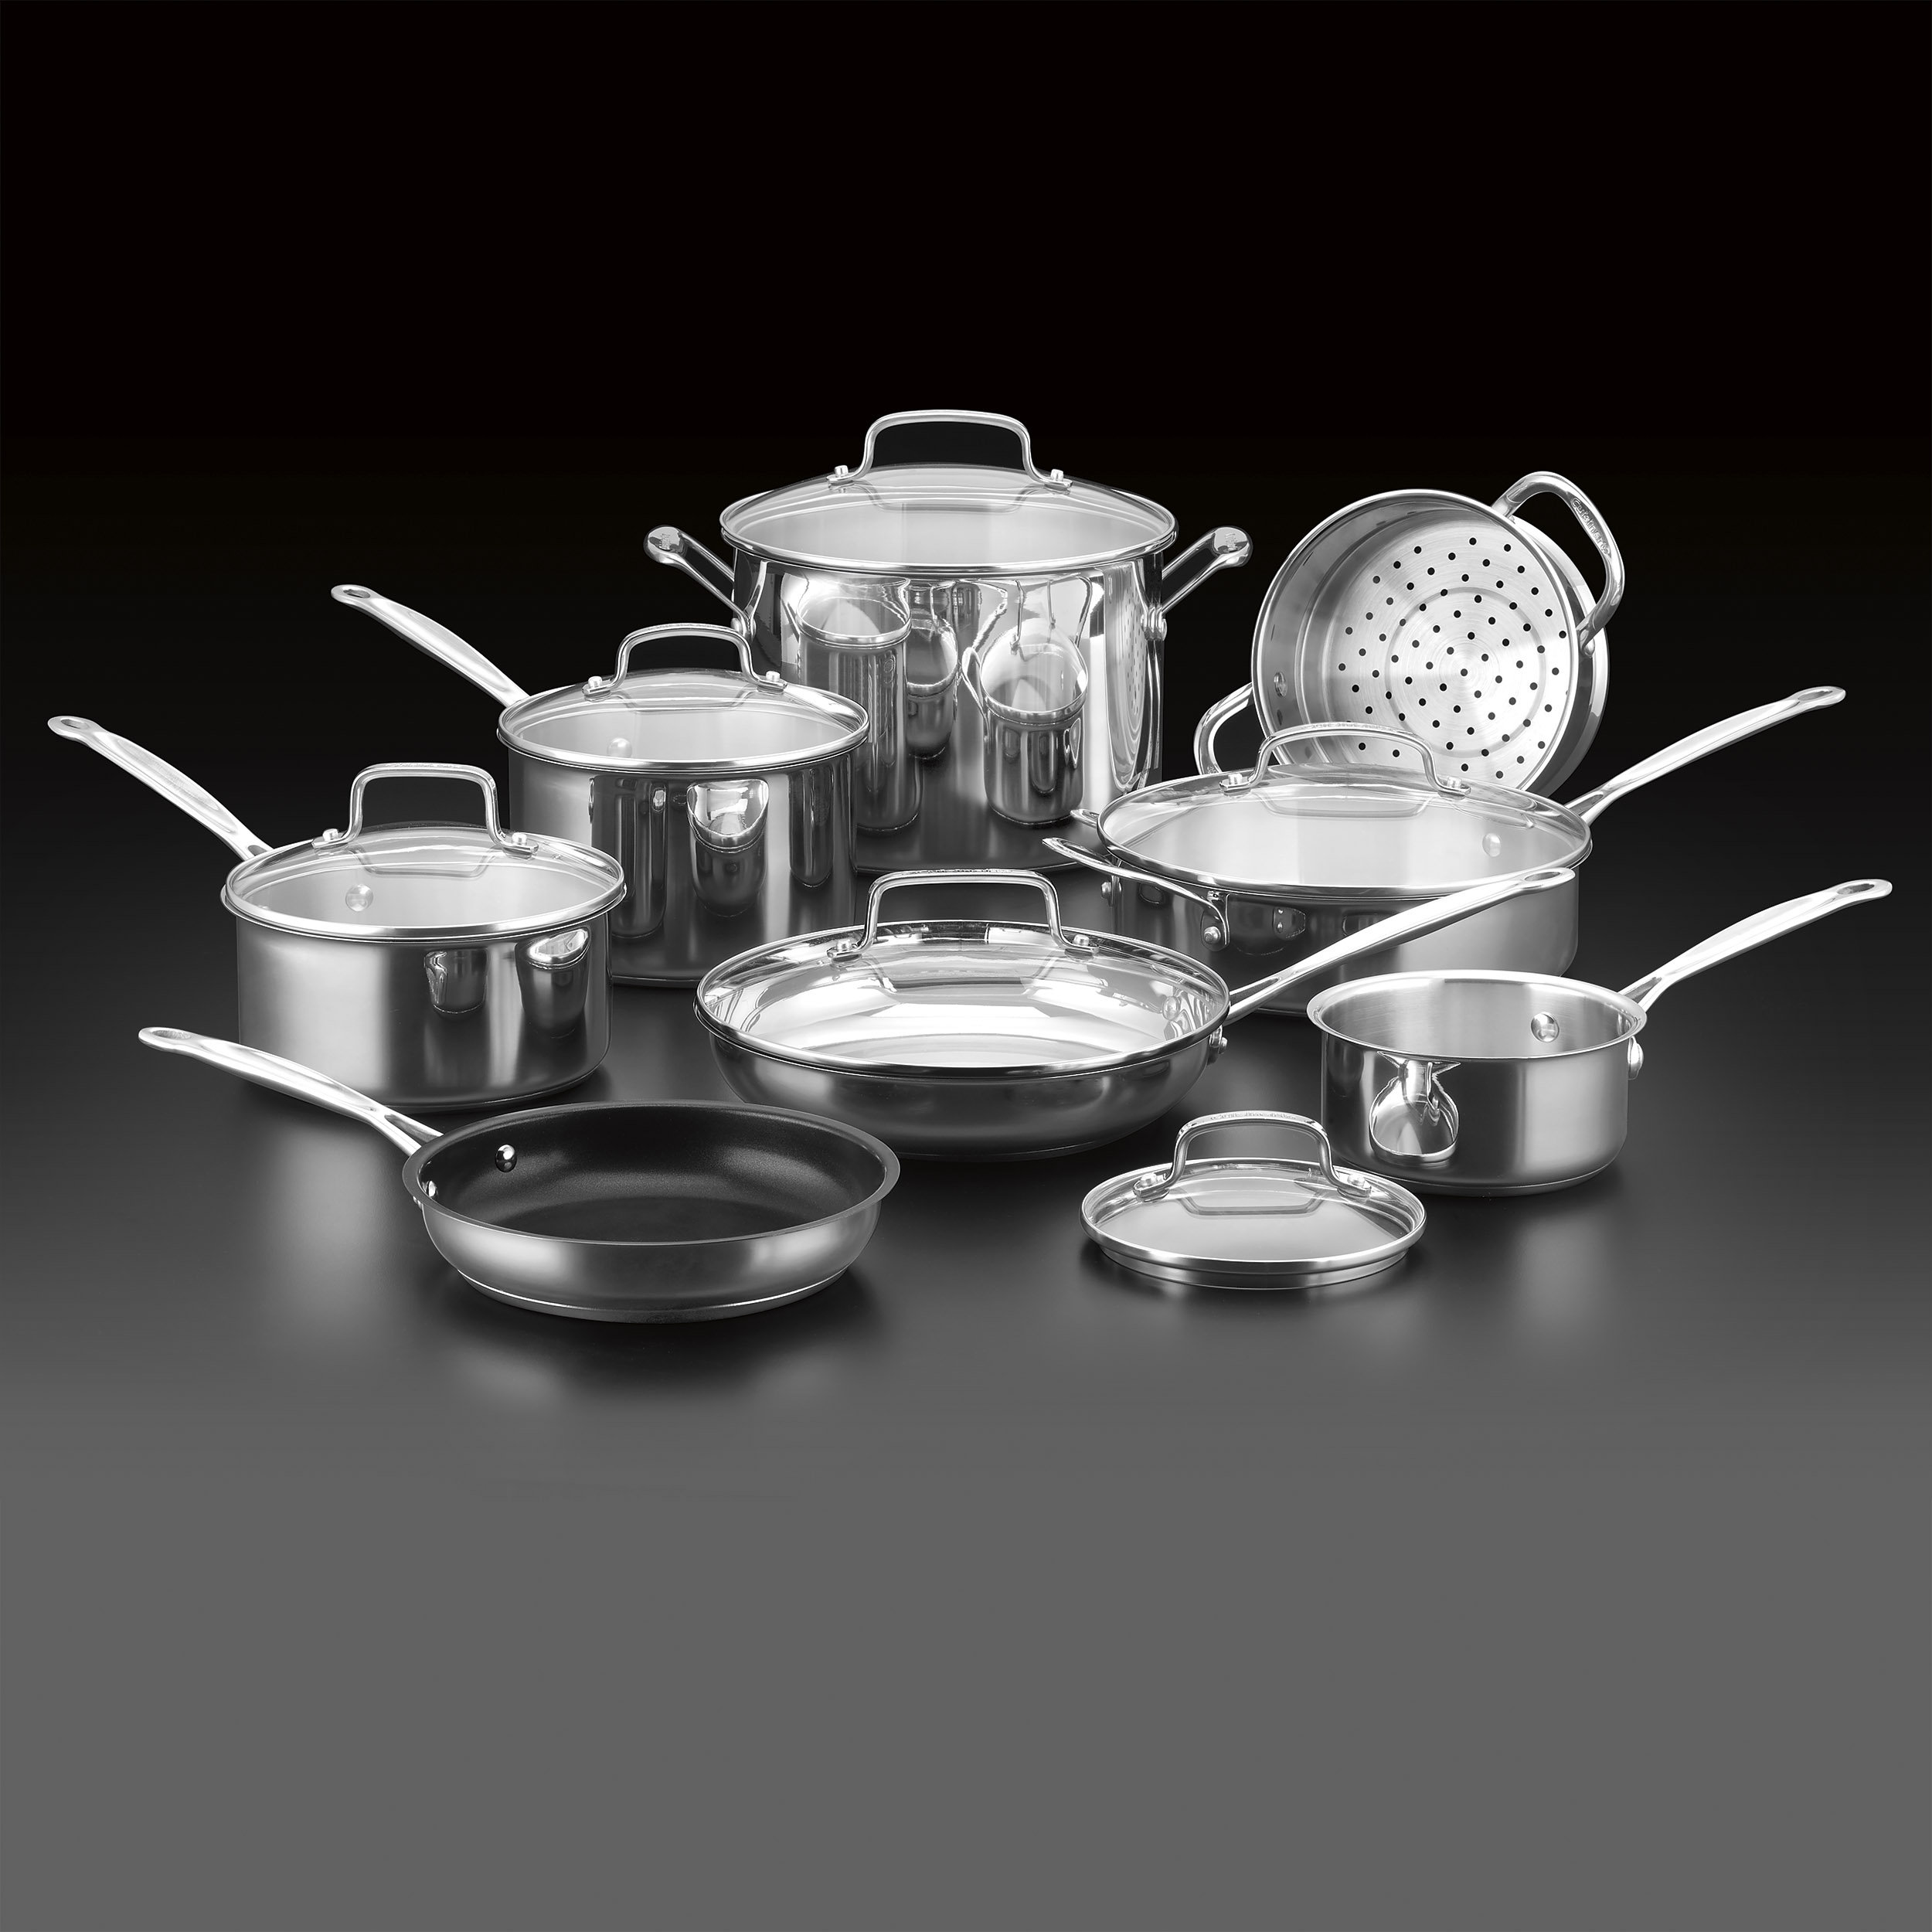 https://assets.wfcdn.com/im/59429225/compr-r85/2578/257826980/cuisinart-chefs-classic-14-piece-stainless-steel-cookware-set.jpg